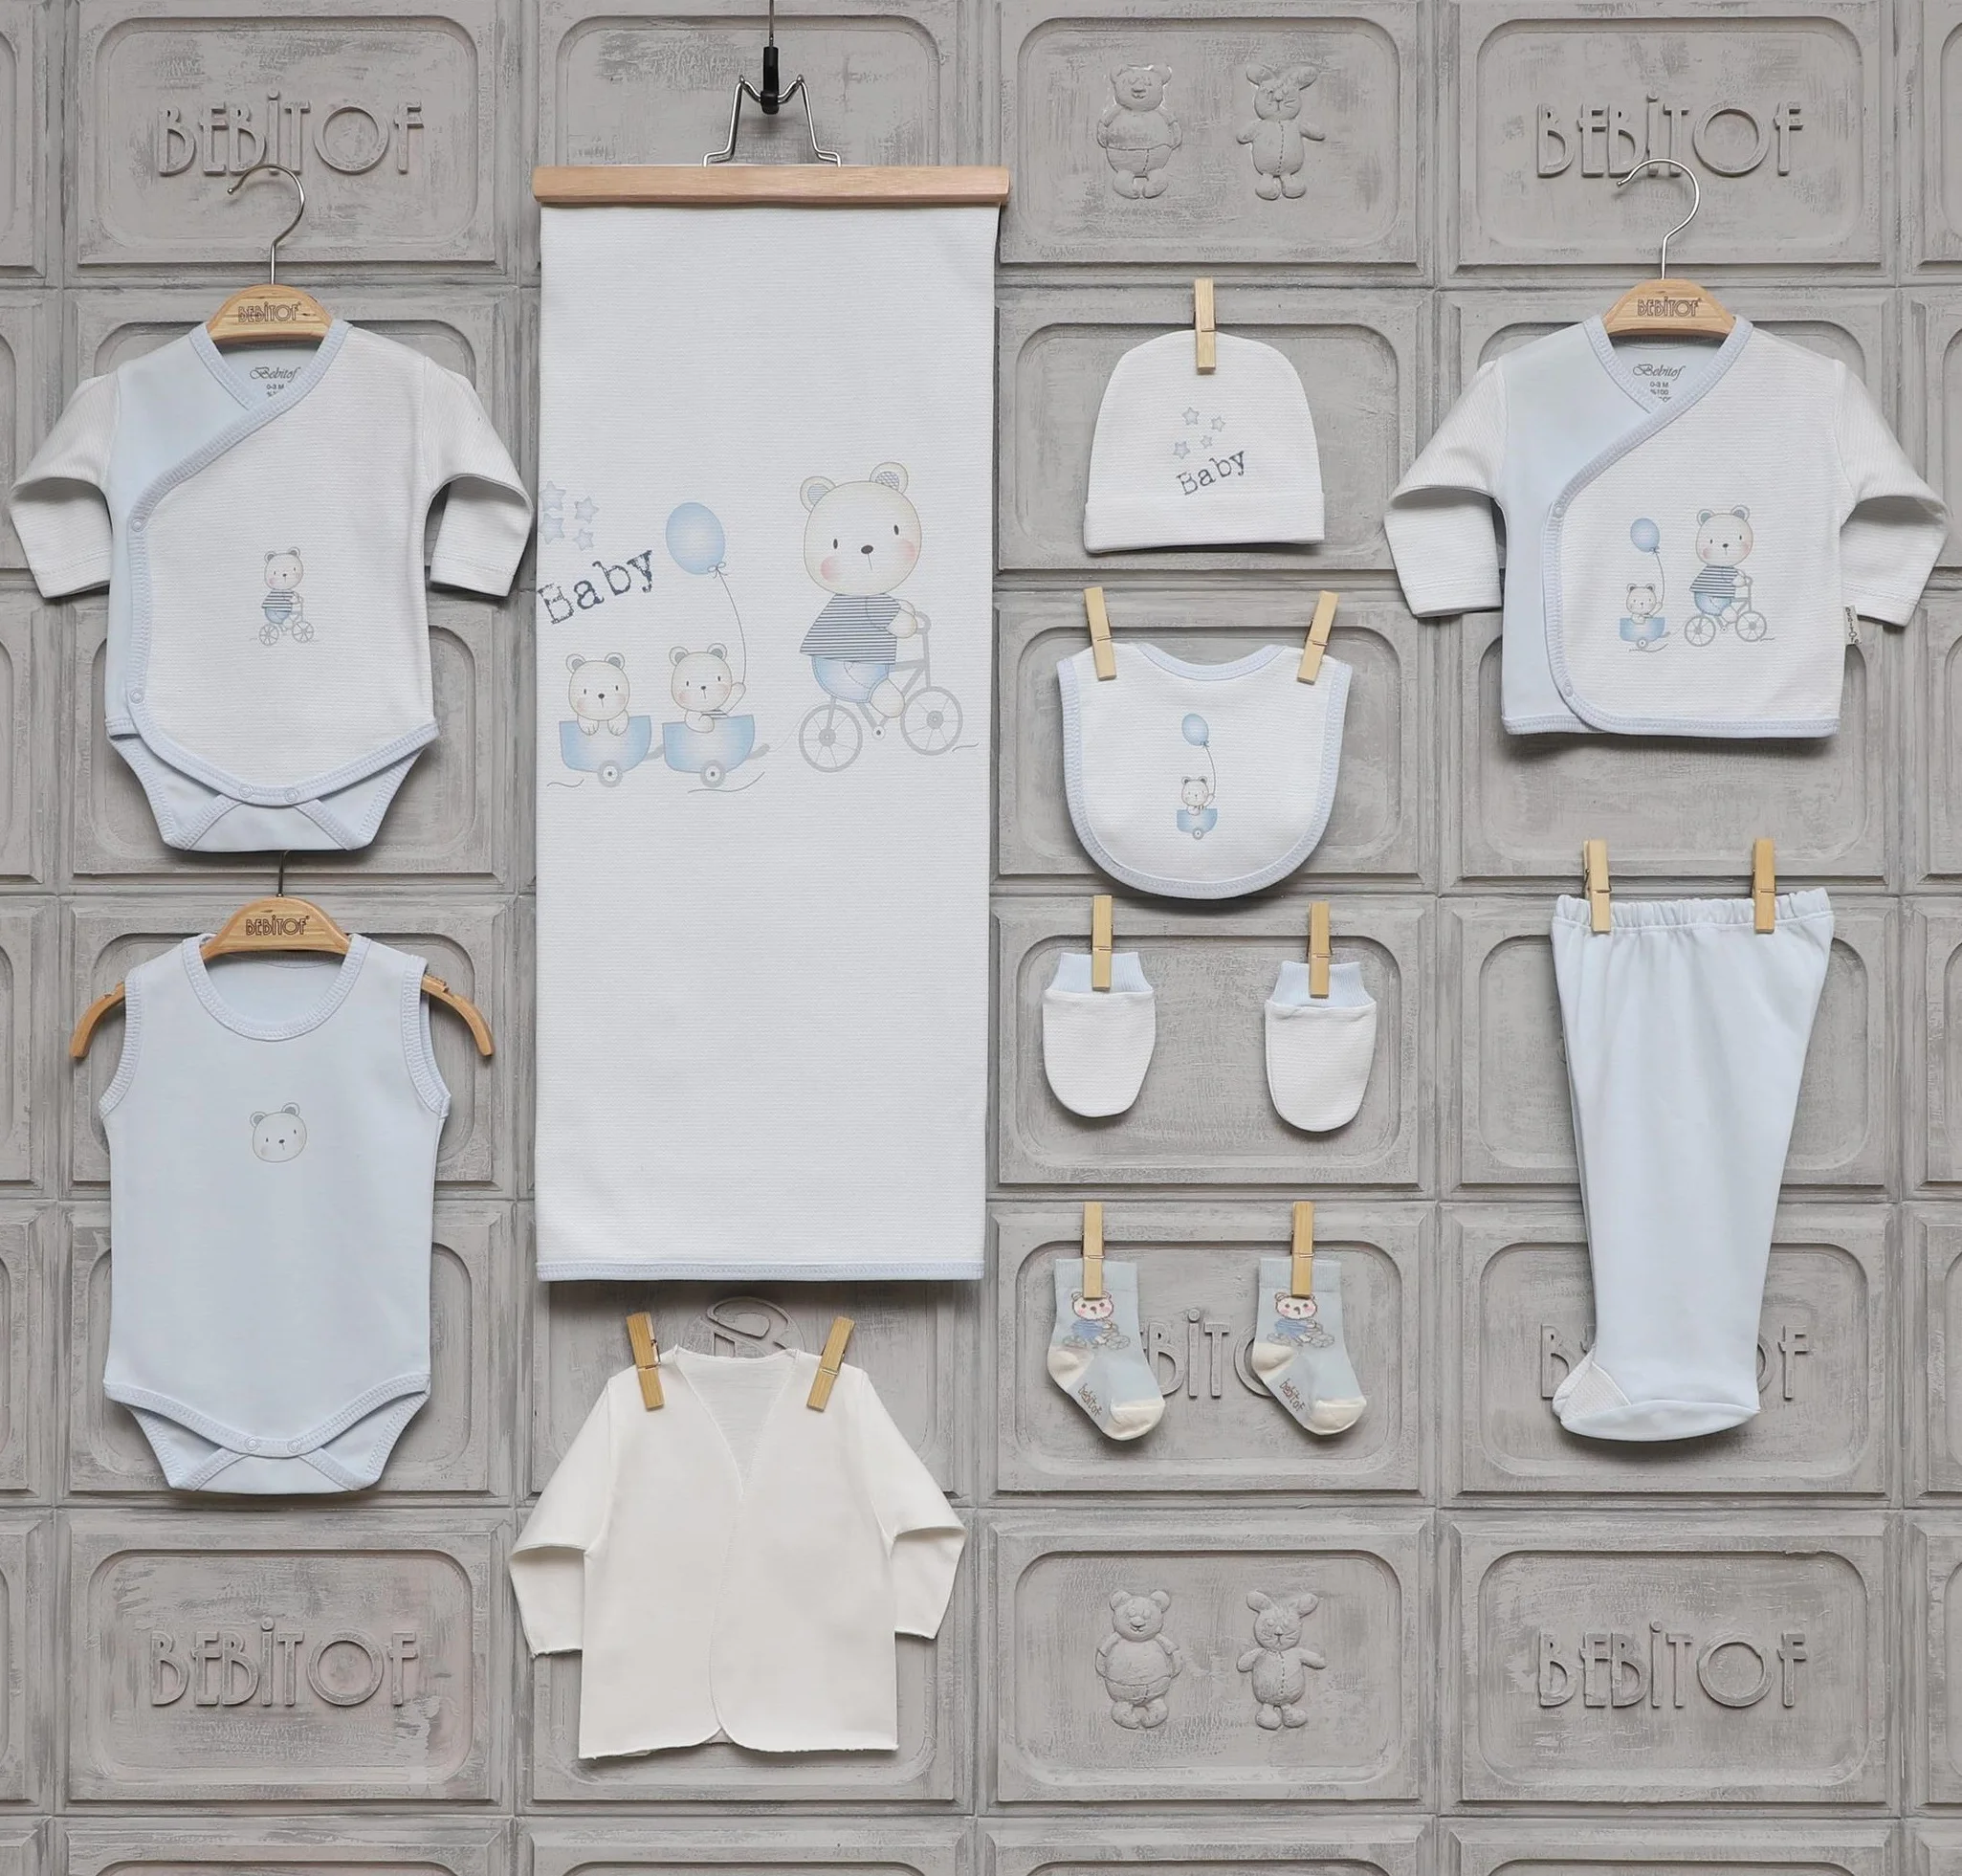 Bebitof Одежда для новорожденных мальчиков хлопковая базовая одежда первой необходимости 10 штук Layette Wellcome подарочный набор для дома 0 3 месяцев от AliExpress RU&CIS NEW